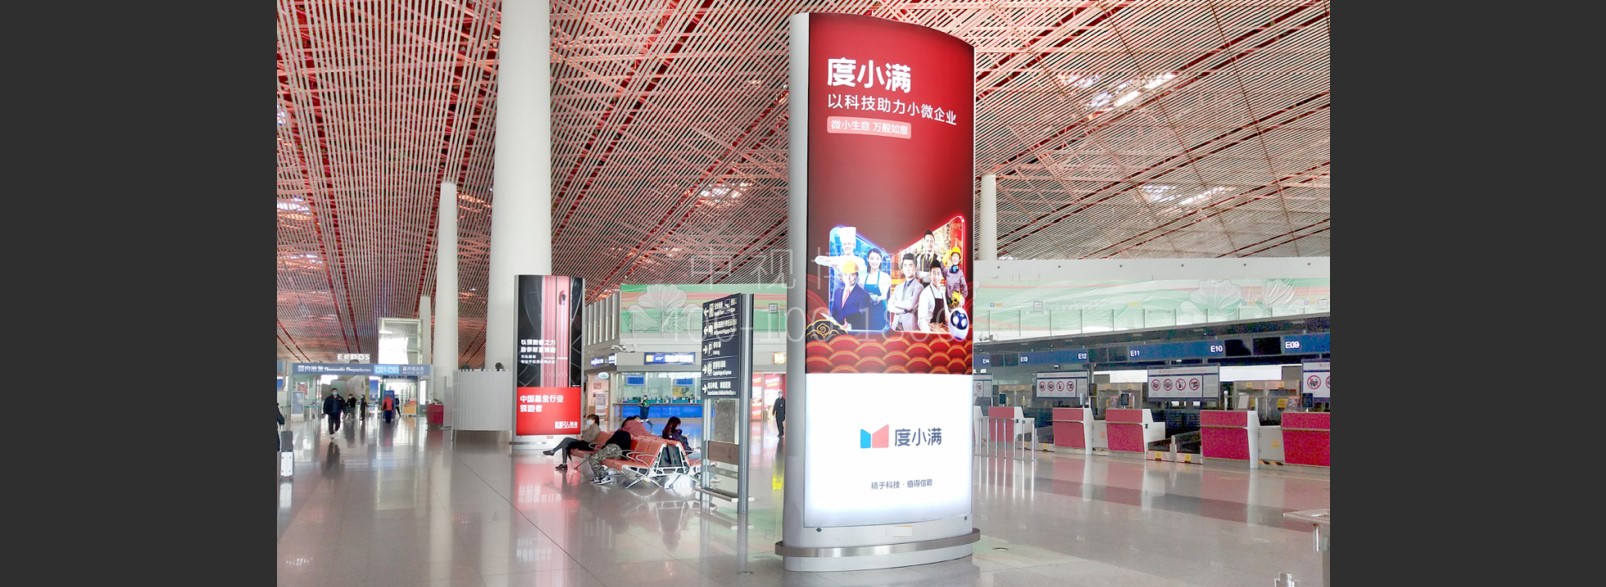 北京首都机场广告-T3出发大厅图腾灯箱J020